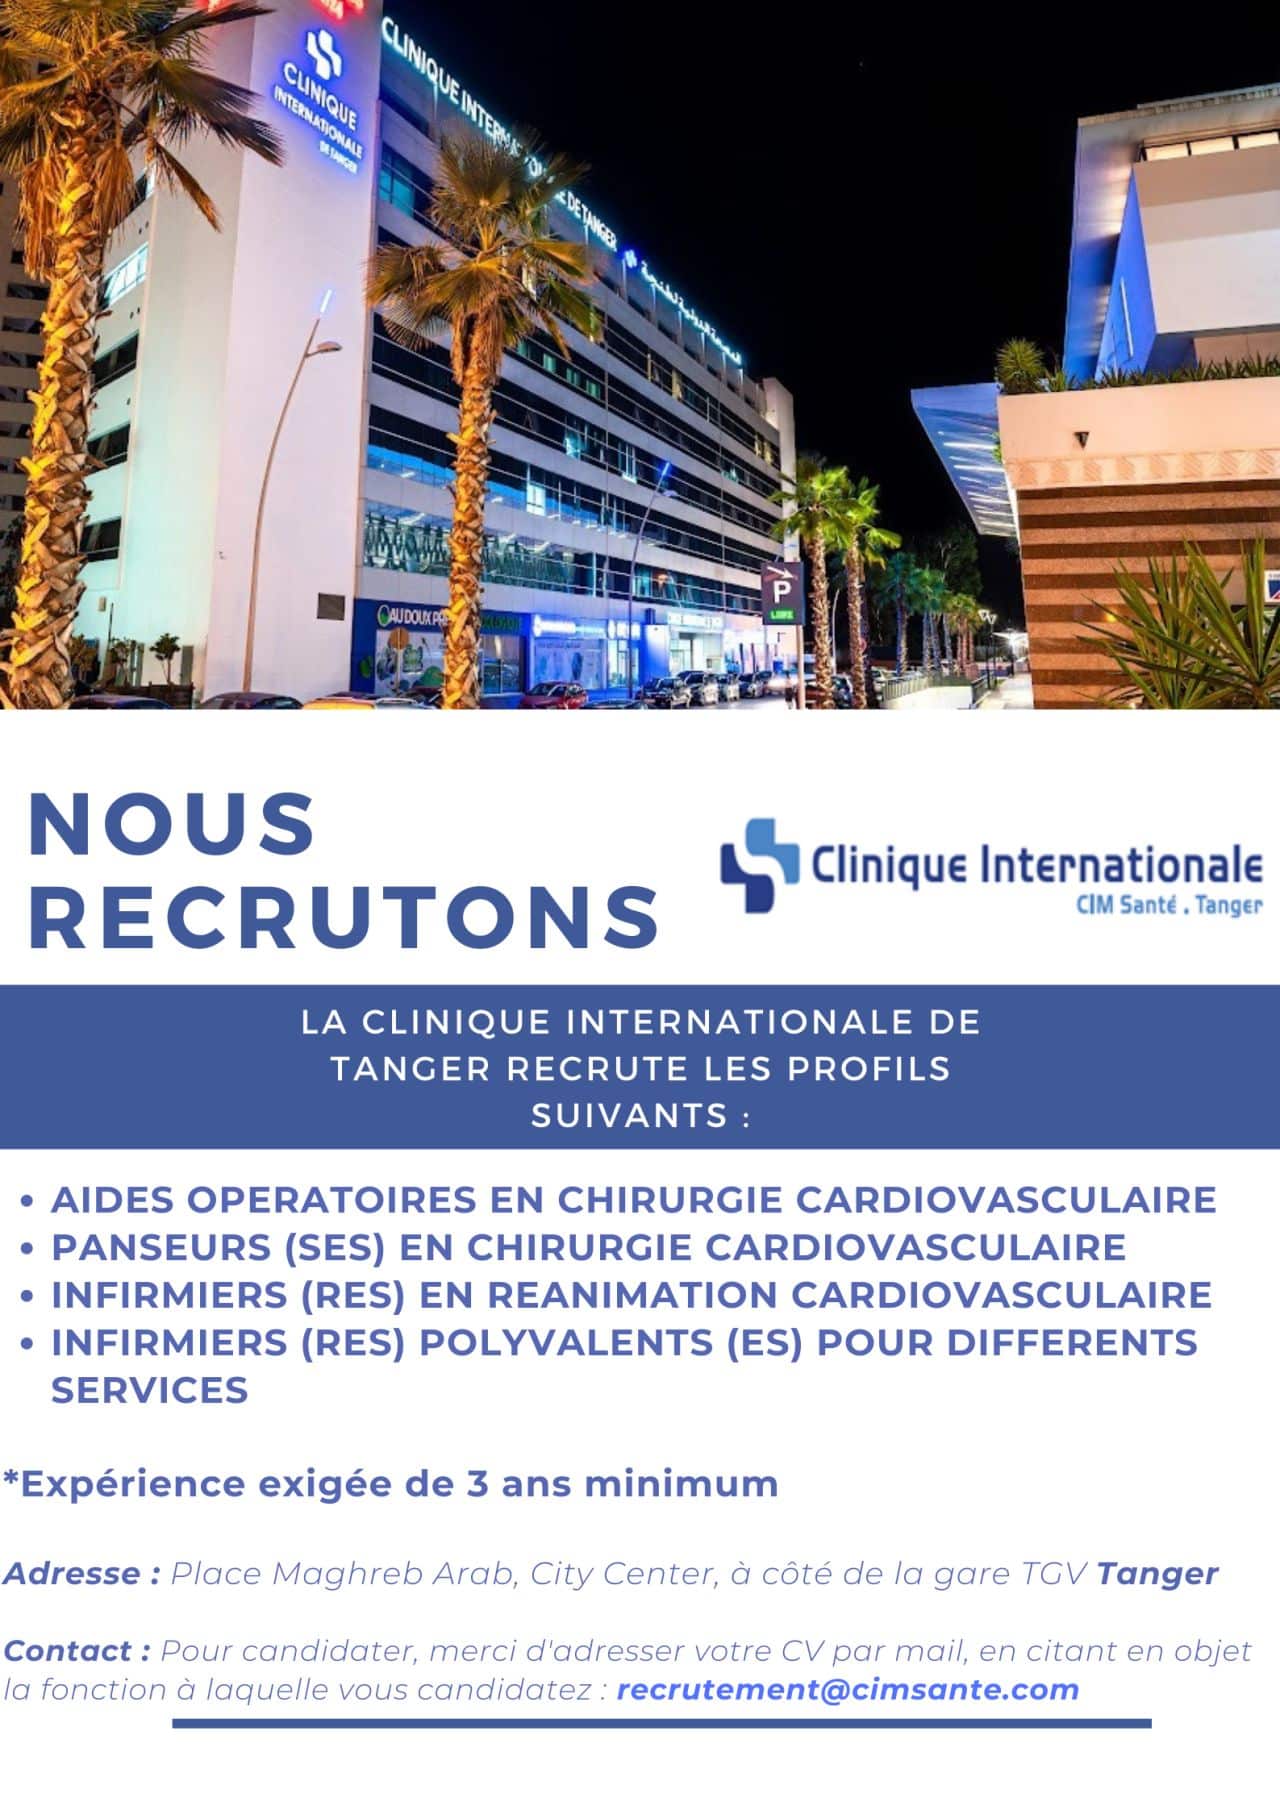 Clinique Internationale de Tanger CIM Santé recrute plusieurs profils